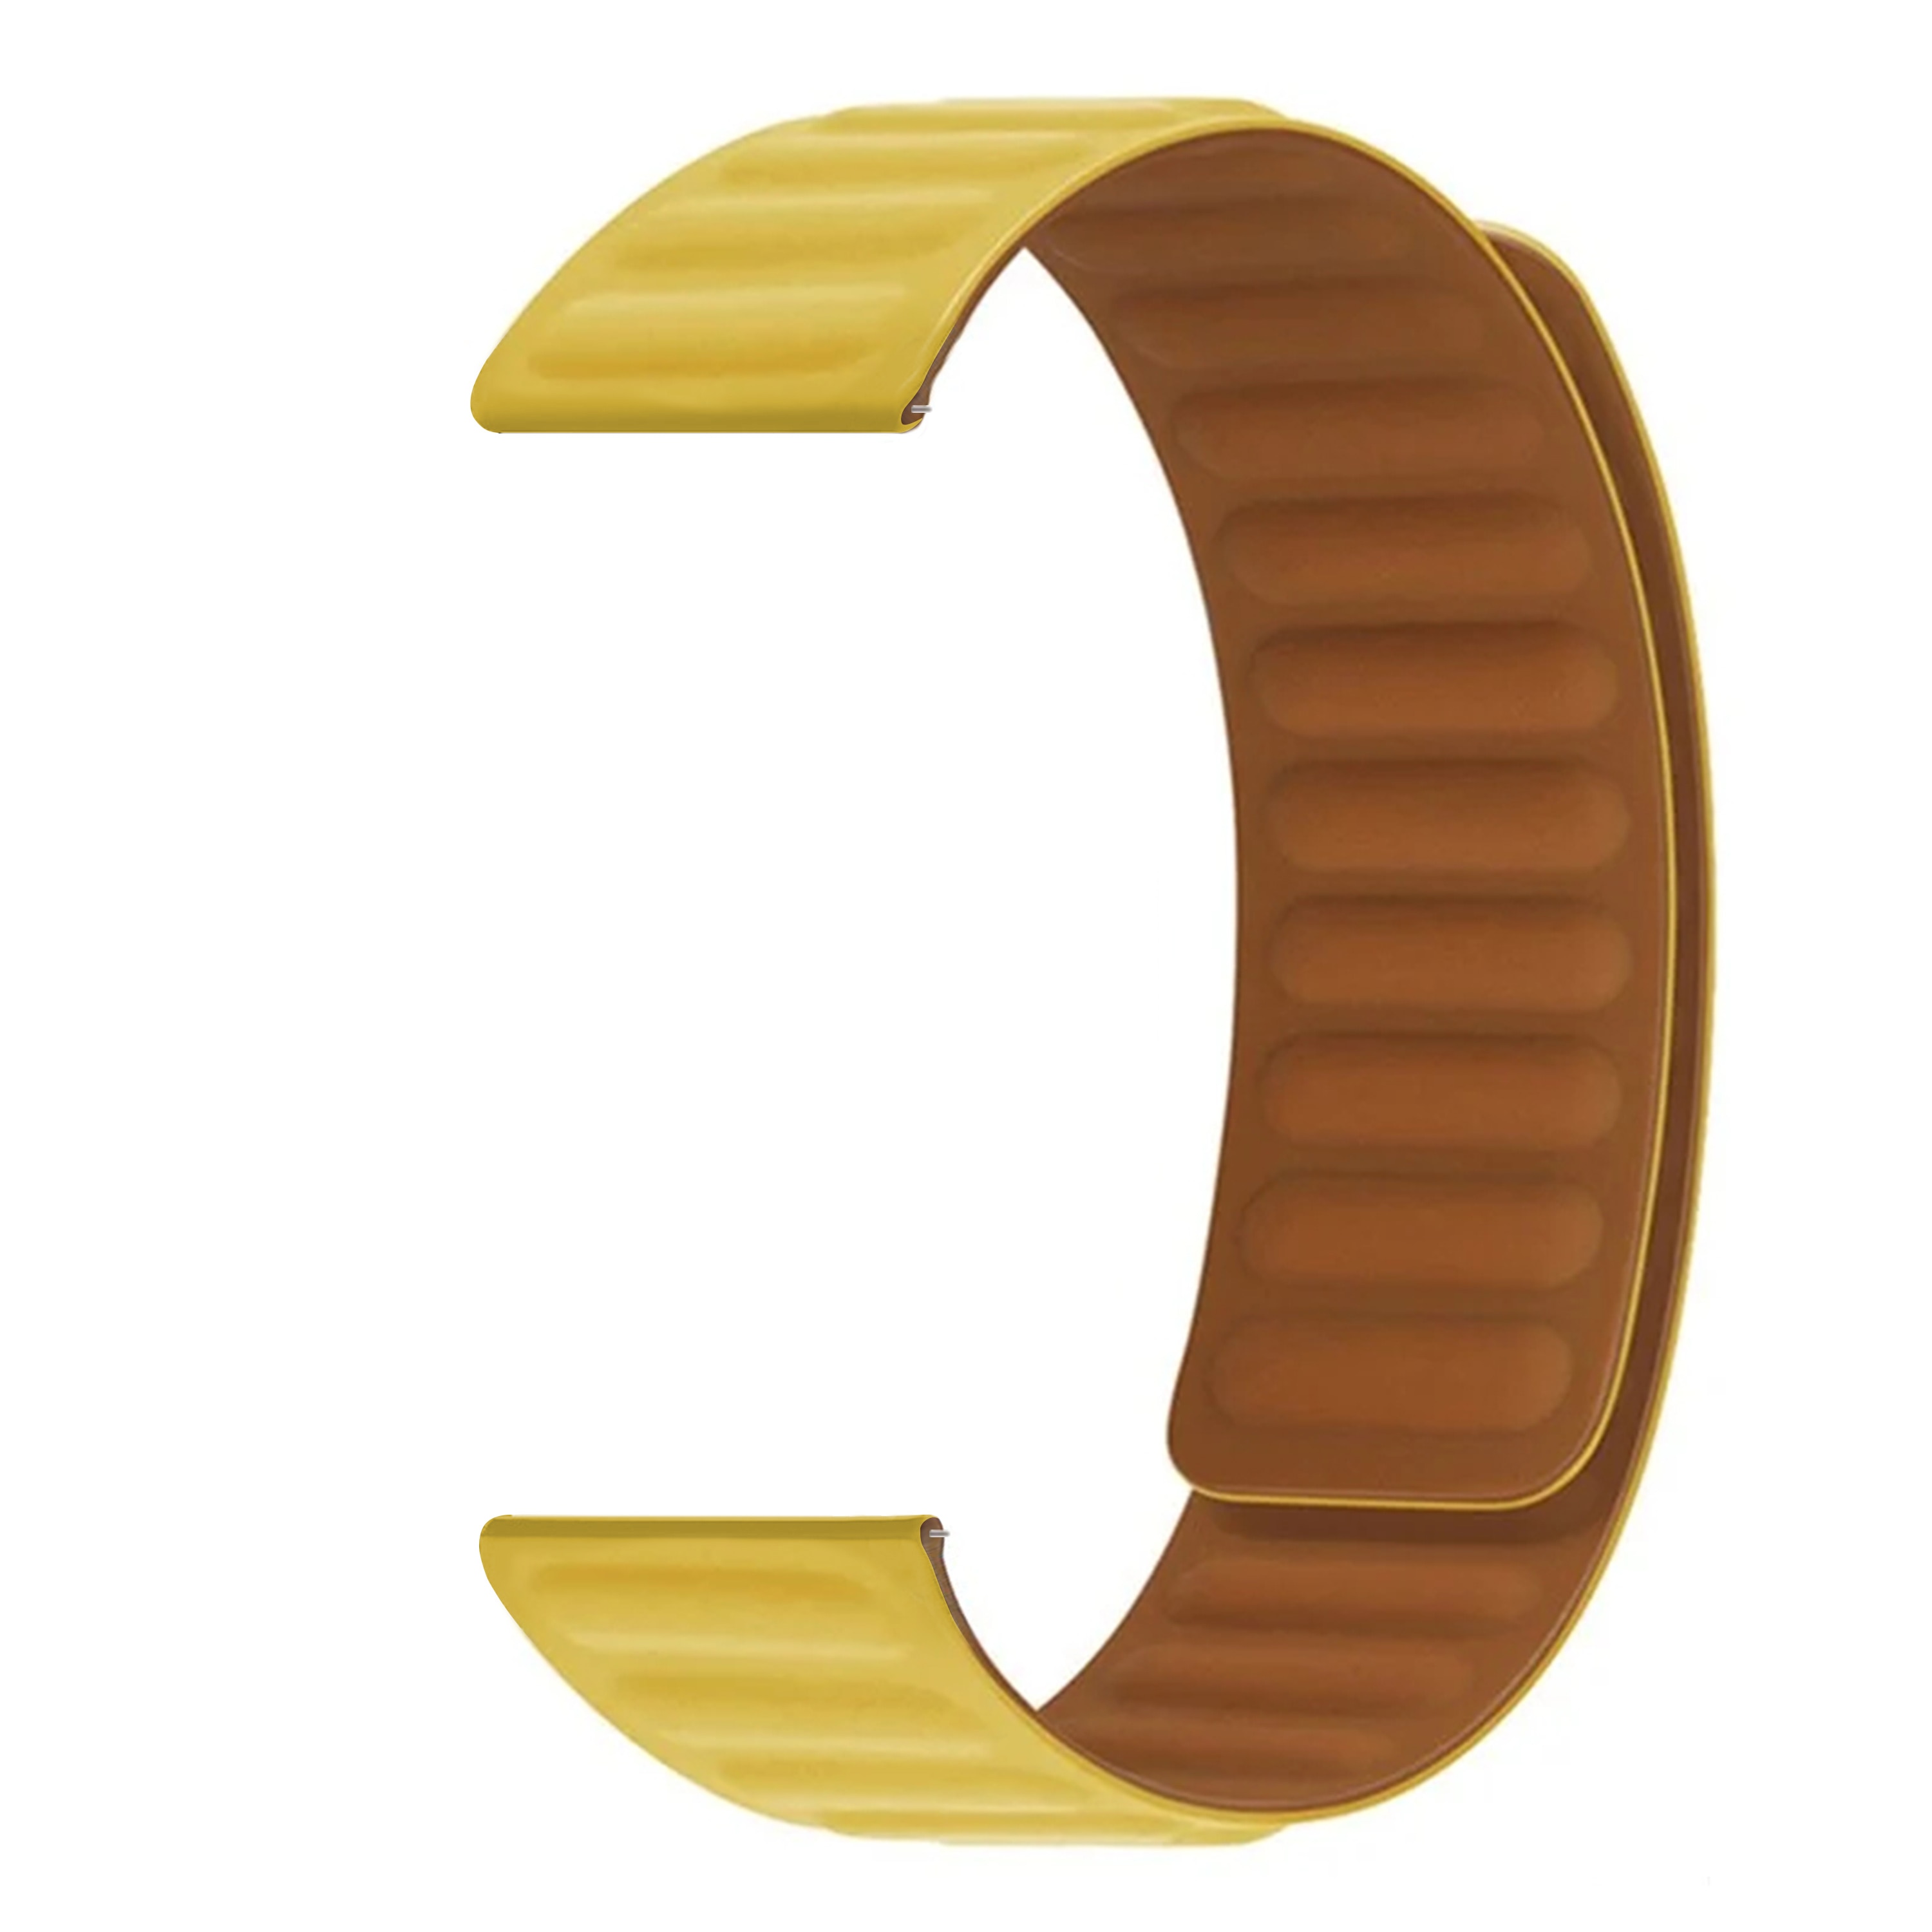 Polar Pacer Armband i silikon med magnetstängning, gul